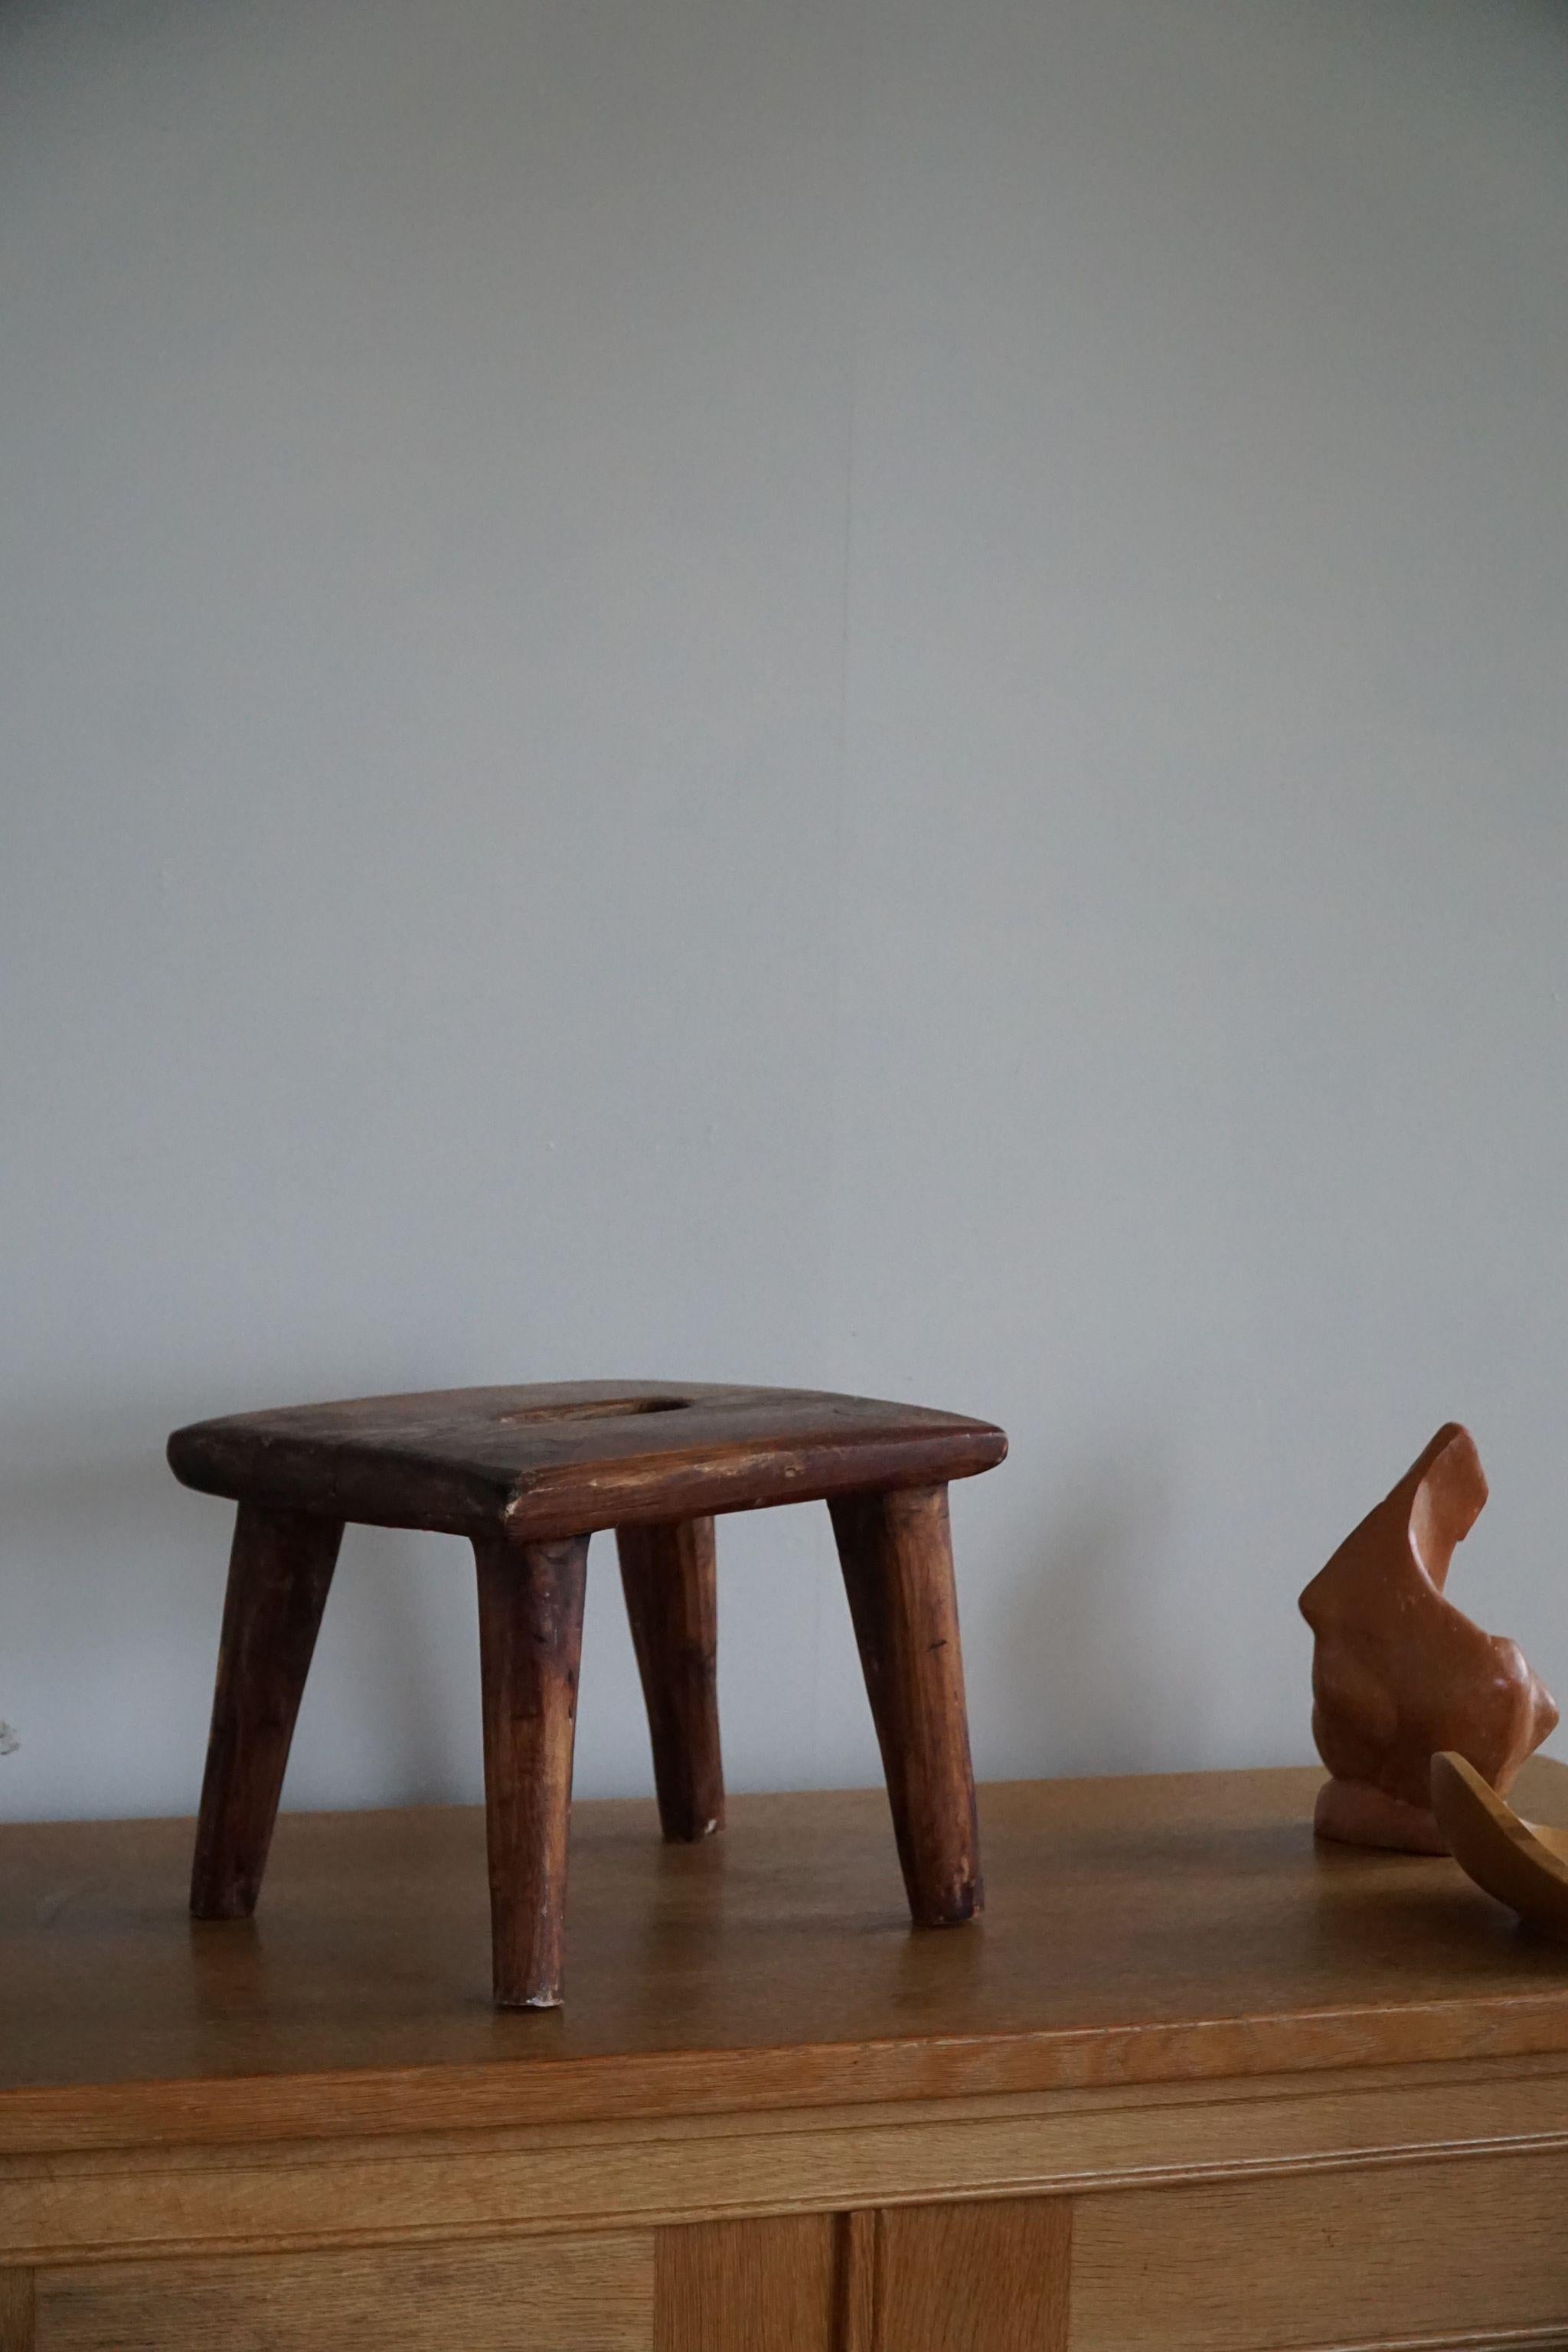 Tabouret décoratif scandinave en pin massif. Sculpté à la main par un ébéniste danois dans les années 1960. Une belle patine d'ensemble pour cet objet vintage.

Ce tabouret moderne s'adapte à de nombreux types de décoration. Parfaitement adapté à